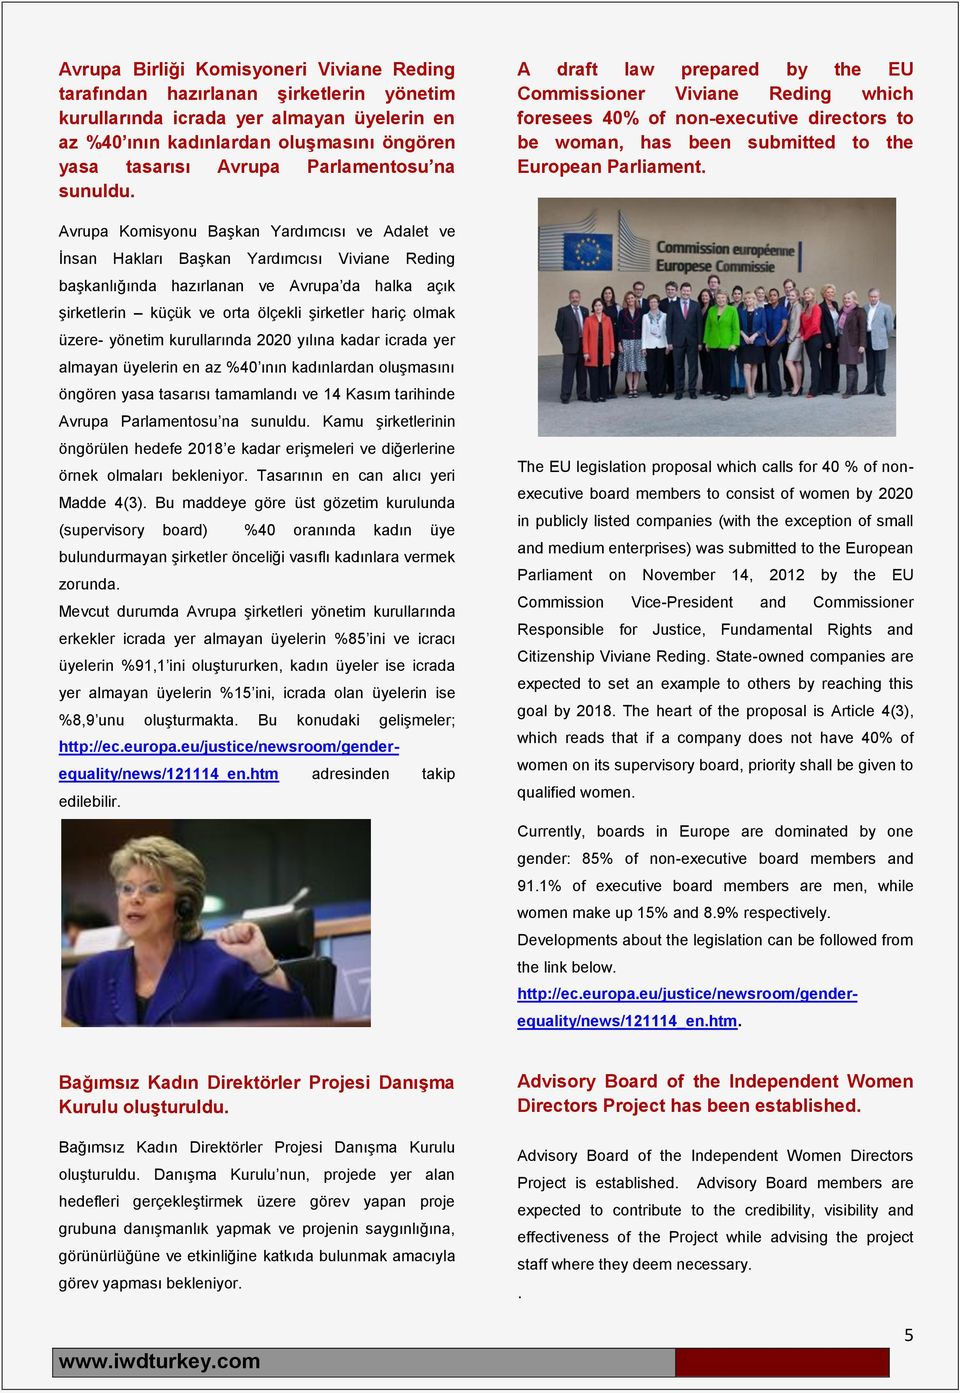 Avrupa Komisyonu Başkan Yardımcısı ve Adalet ve İnsan Hakları Başkan Yardımcısı Viviane Reding başkanlığında hazırlanan ve Avrupa da halka açık şirketlerin küçük ve orta ölçekli şirketler hariç olmak